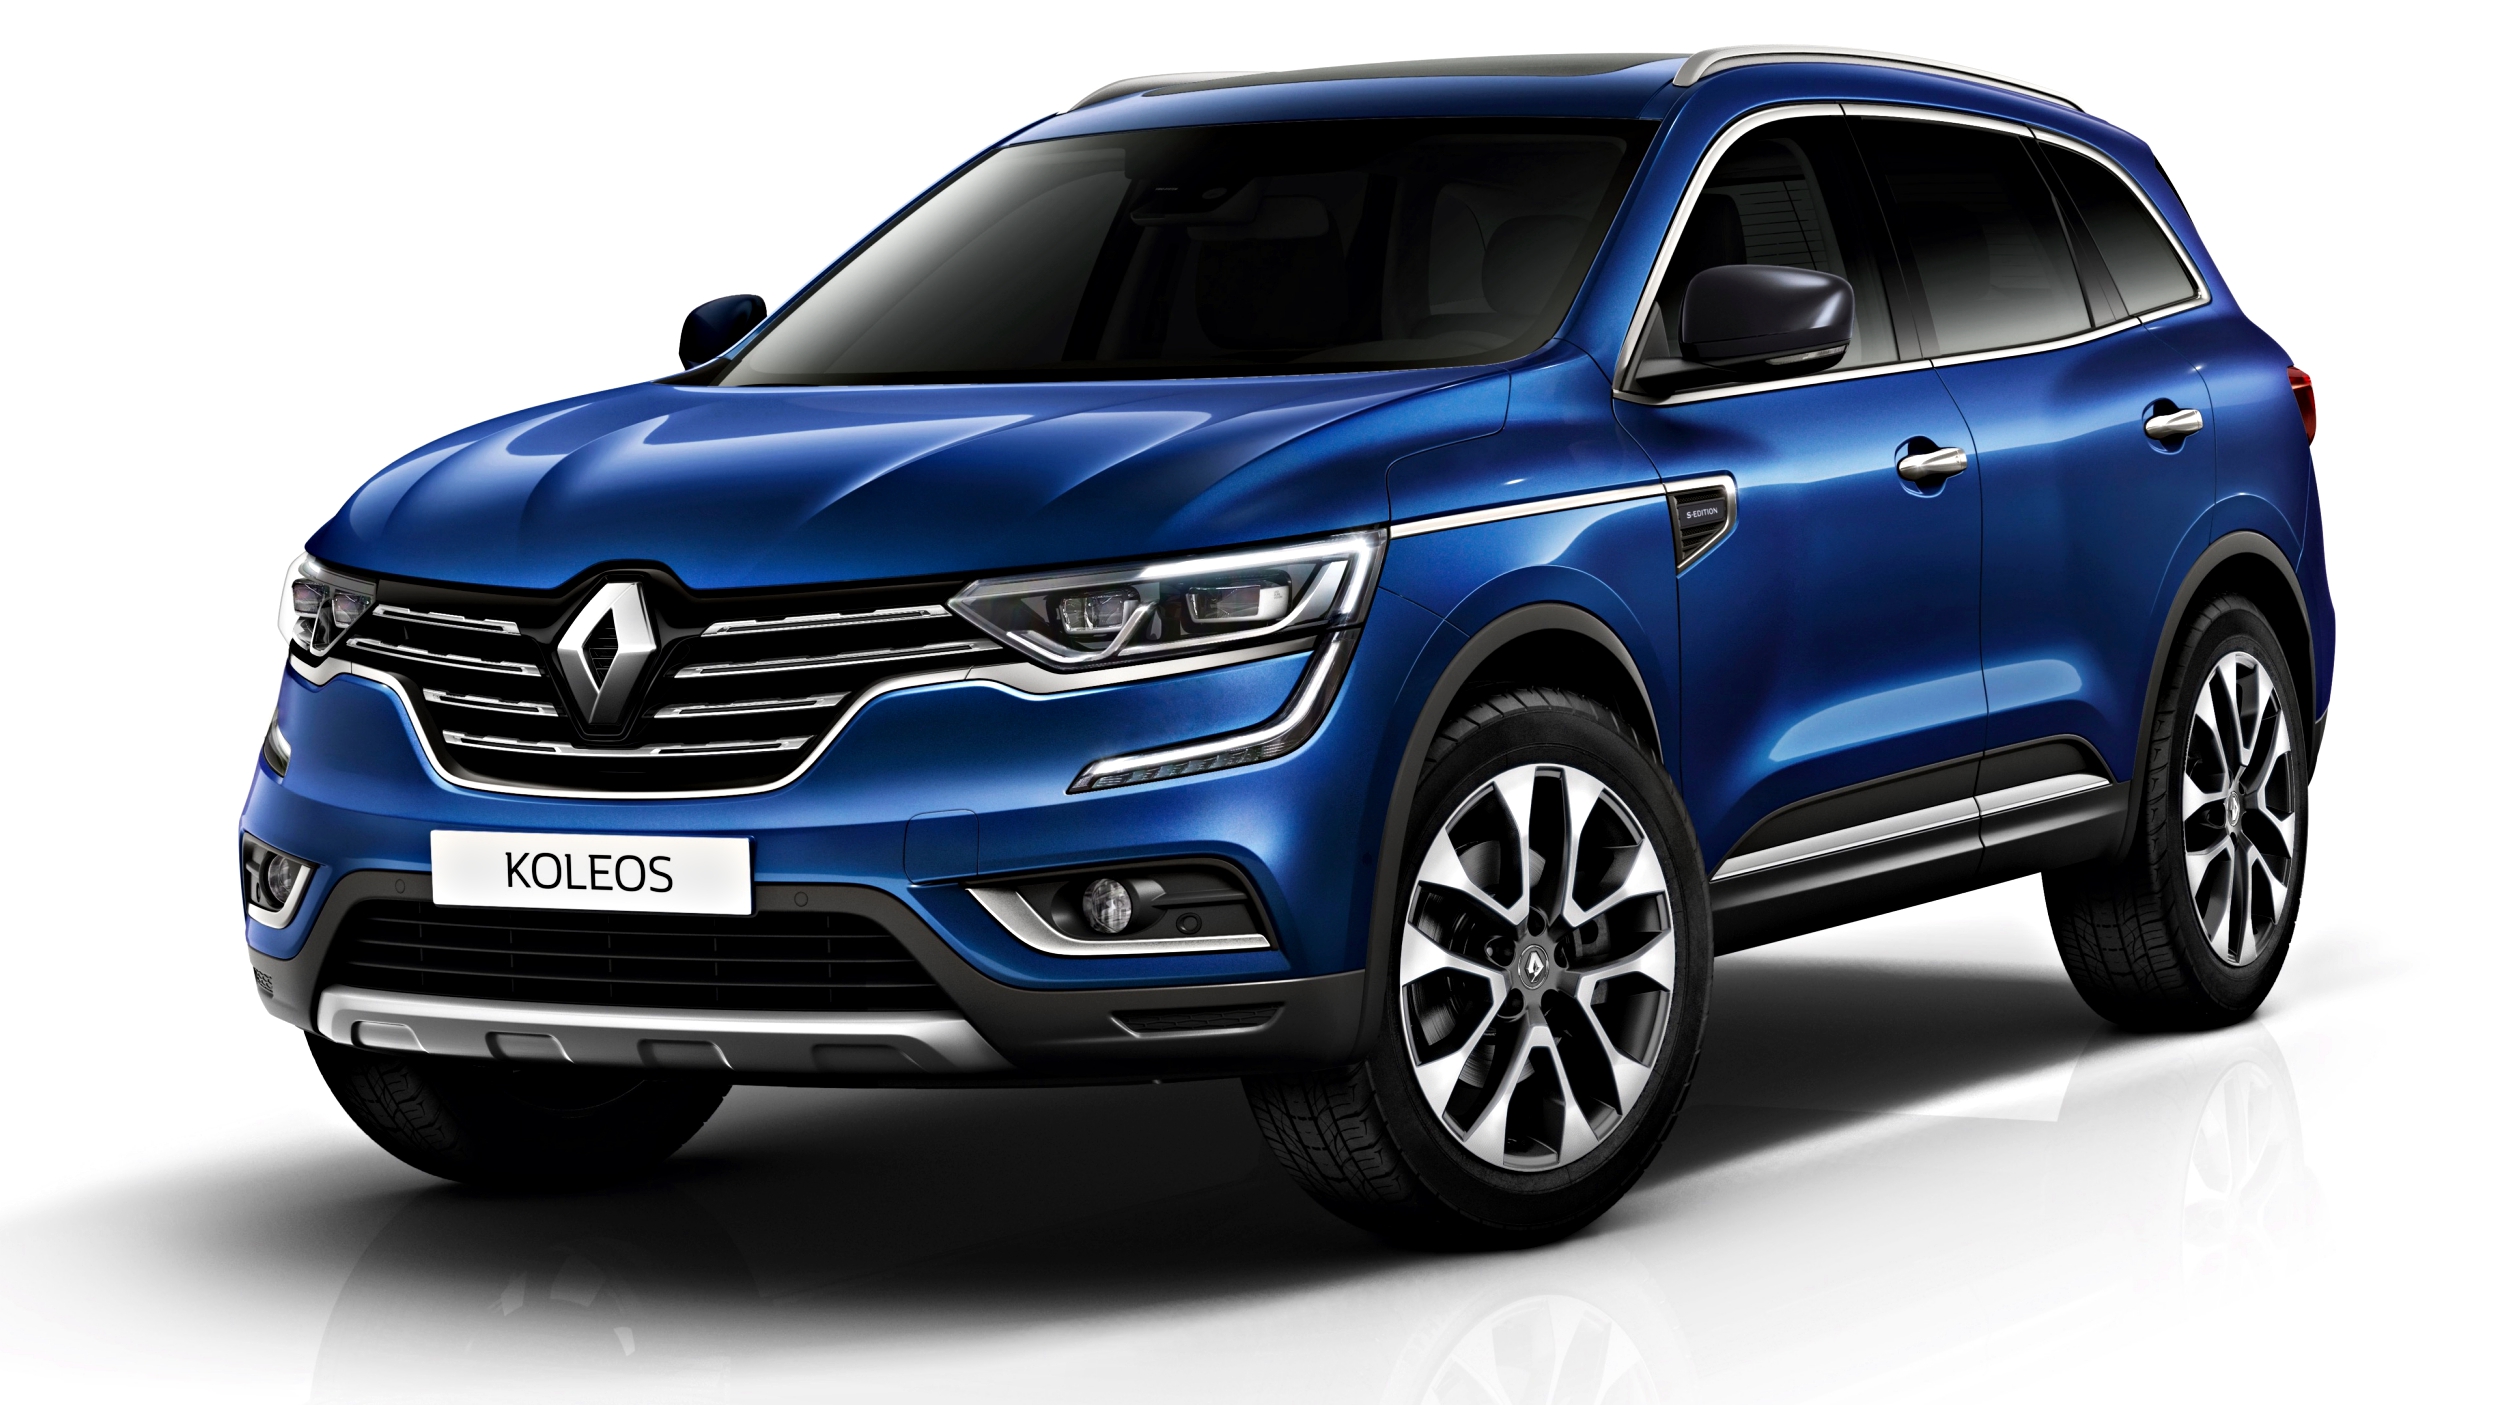 News - Renault Introduces Koleos S-Edition, $45k Drive-Away